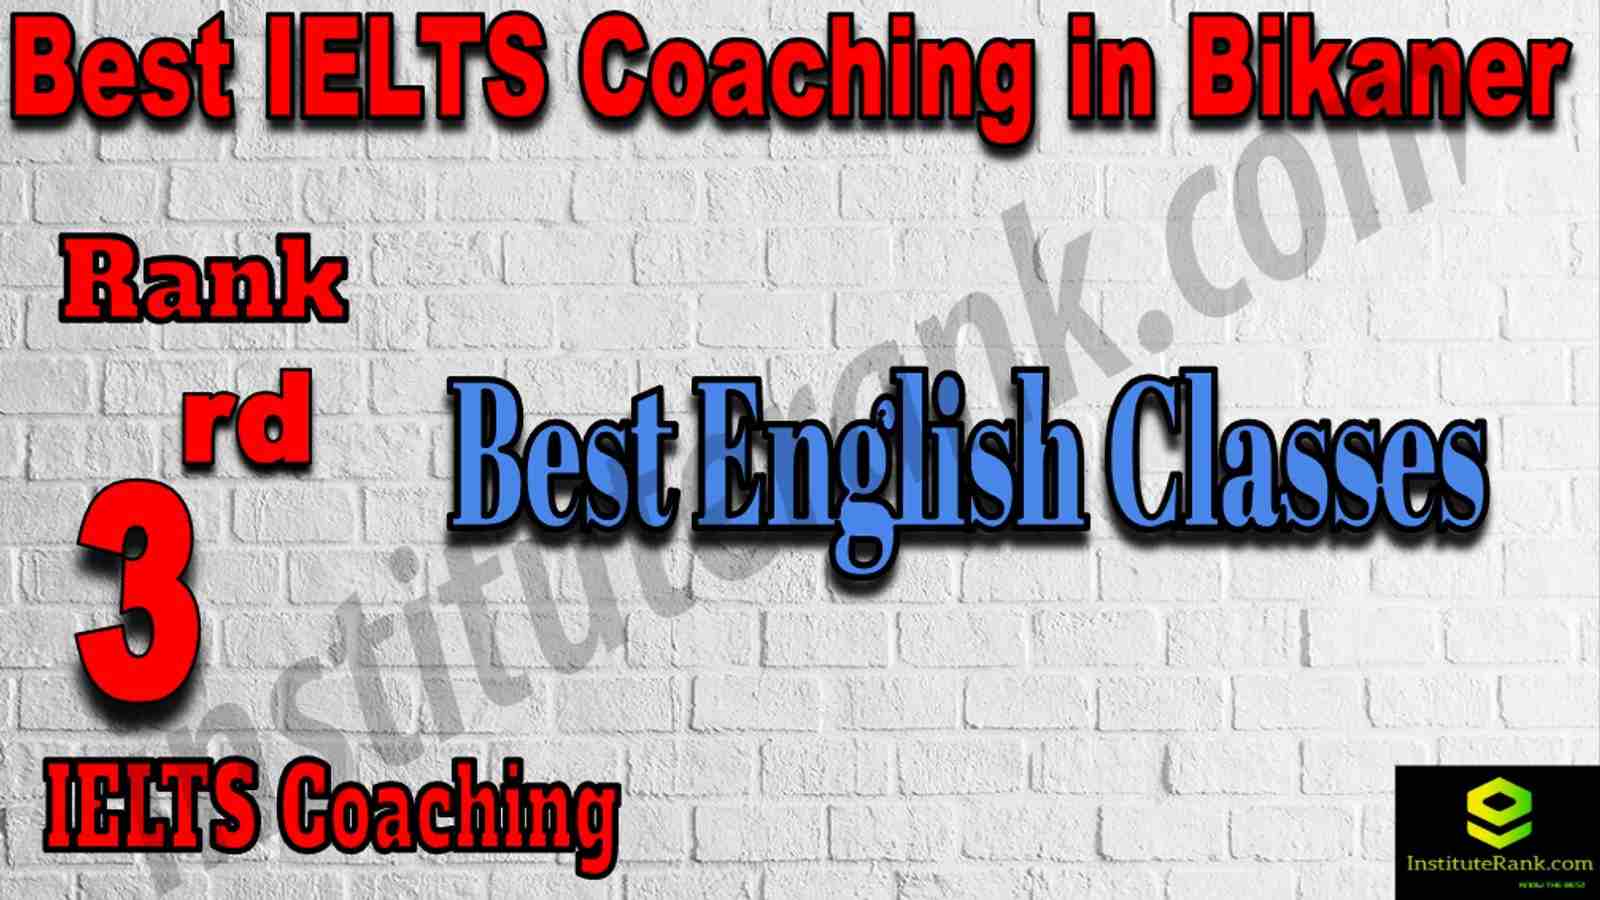 3rd Best IELTS Coaching in Bikaner